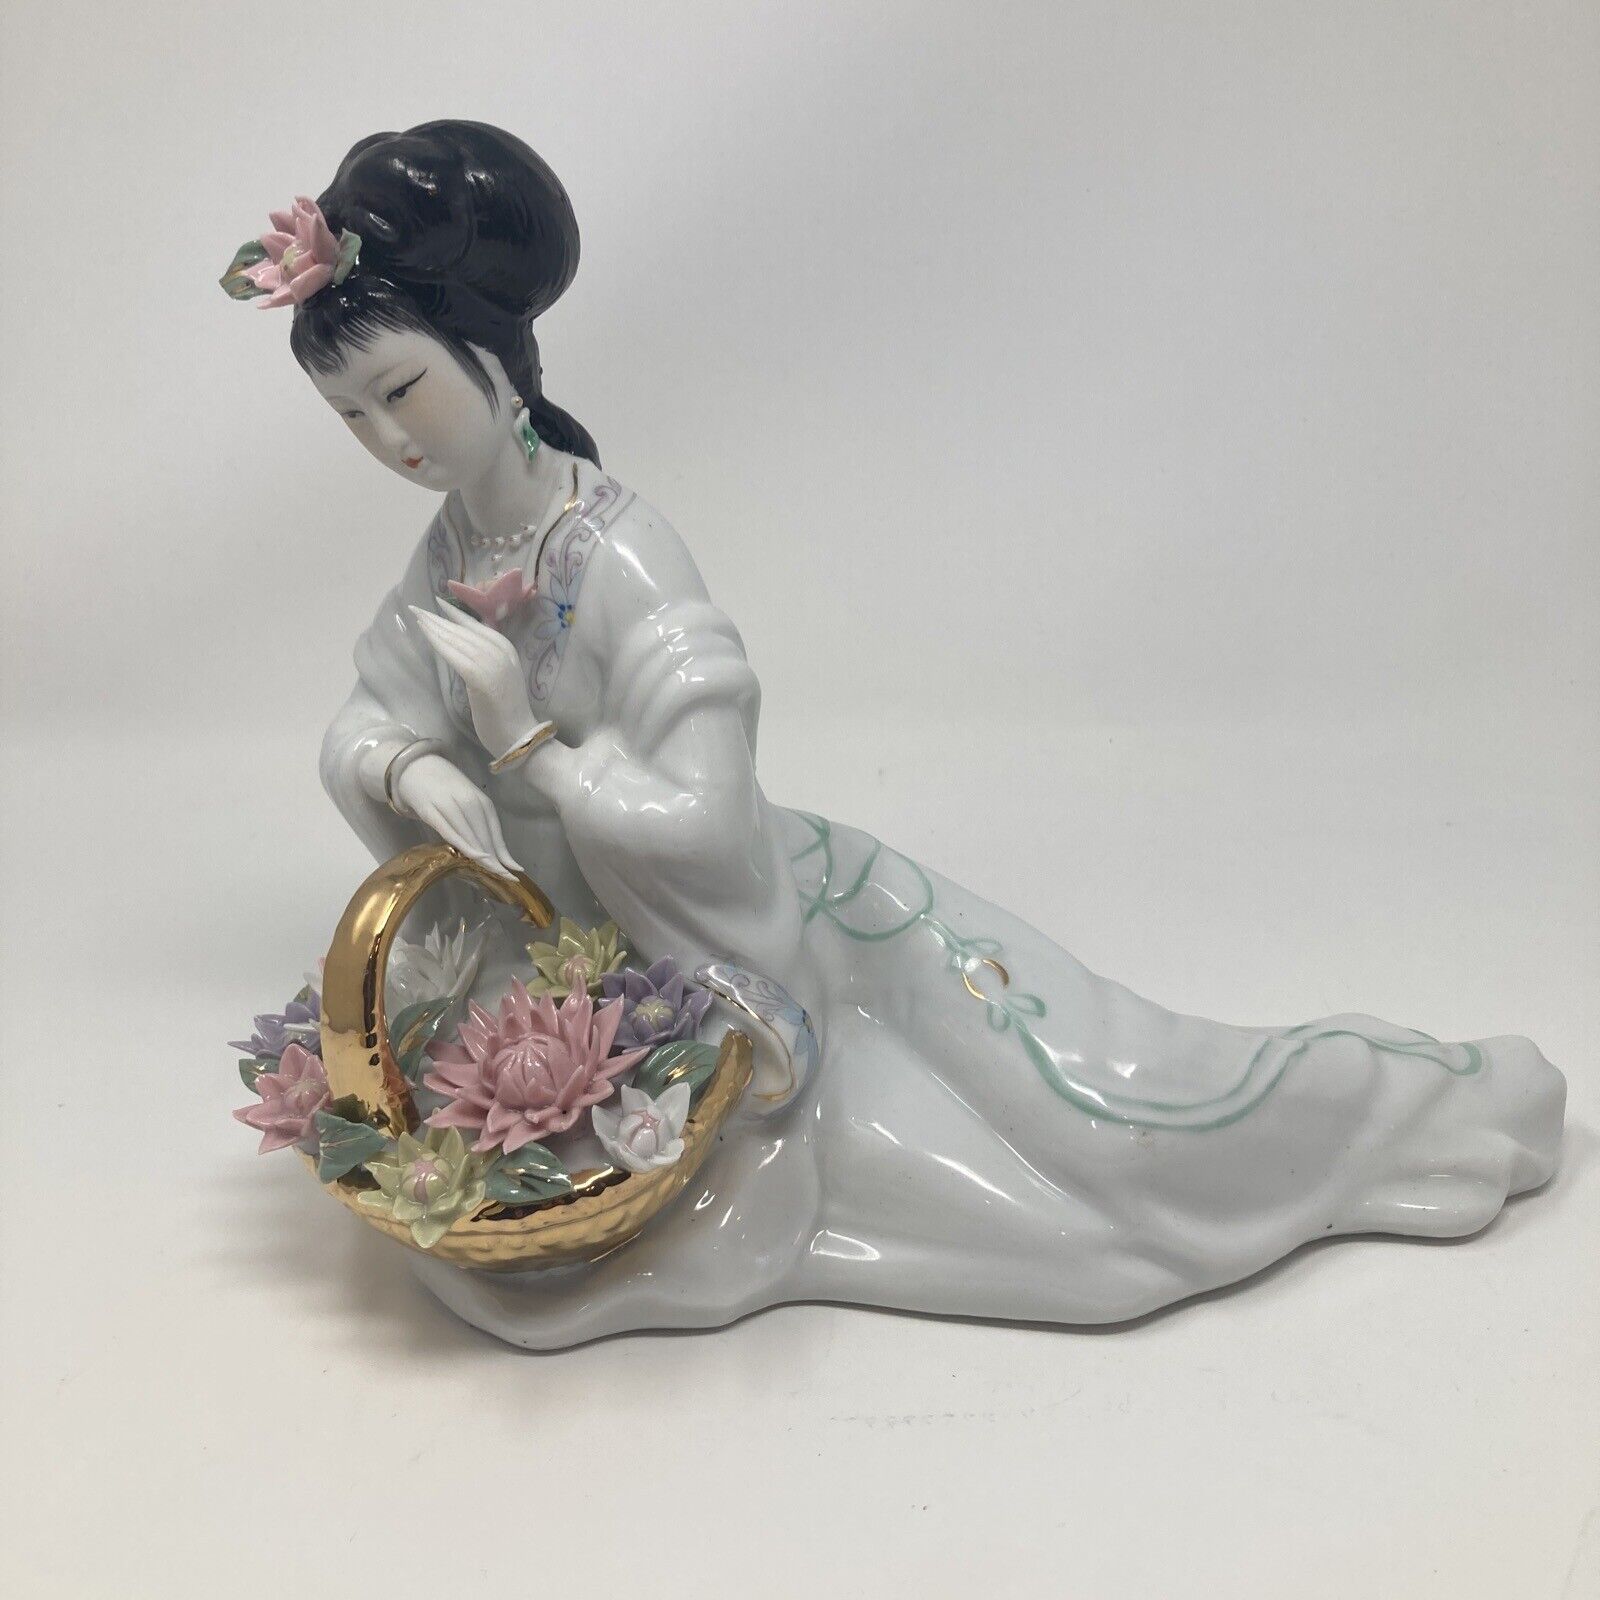 Large Geisha Porcelain Figurine. Approximately 8”Tall, 9” Base. Beautiful